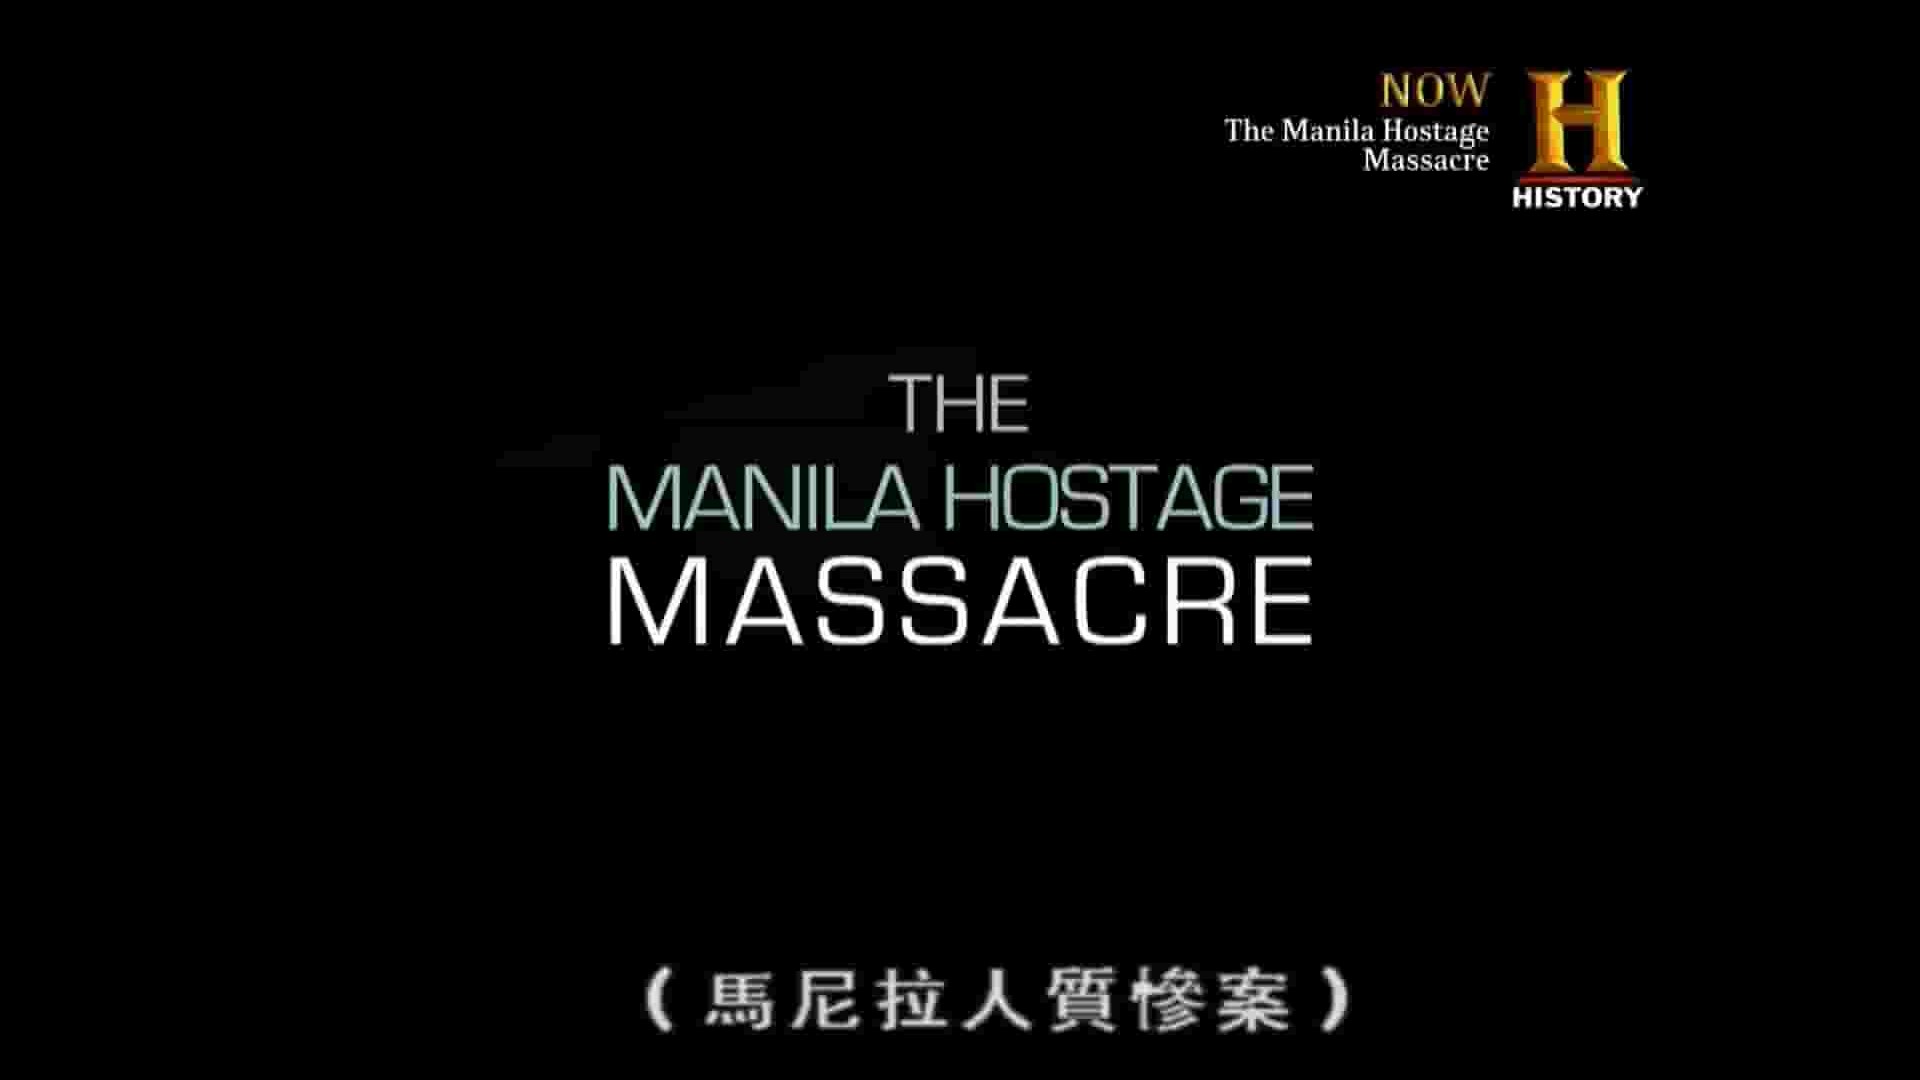 历史频道《马尼拉人质惨案 The Manila Hostage Massacre》全1集 英语繁中 1080P高清网盘下载